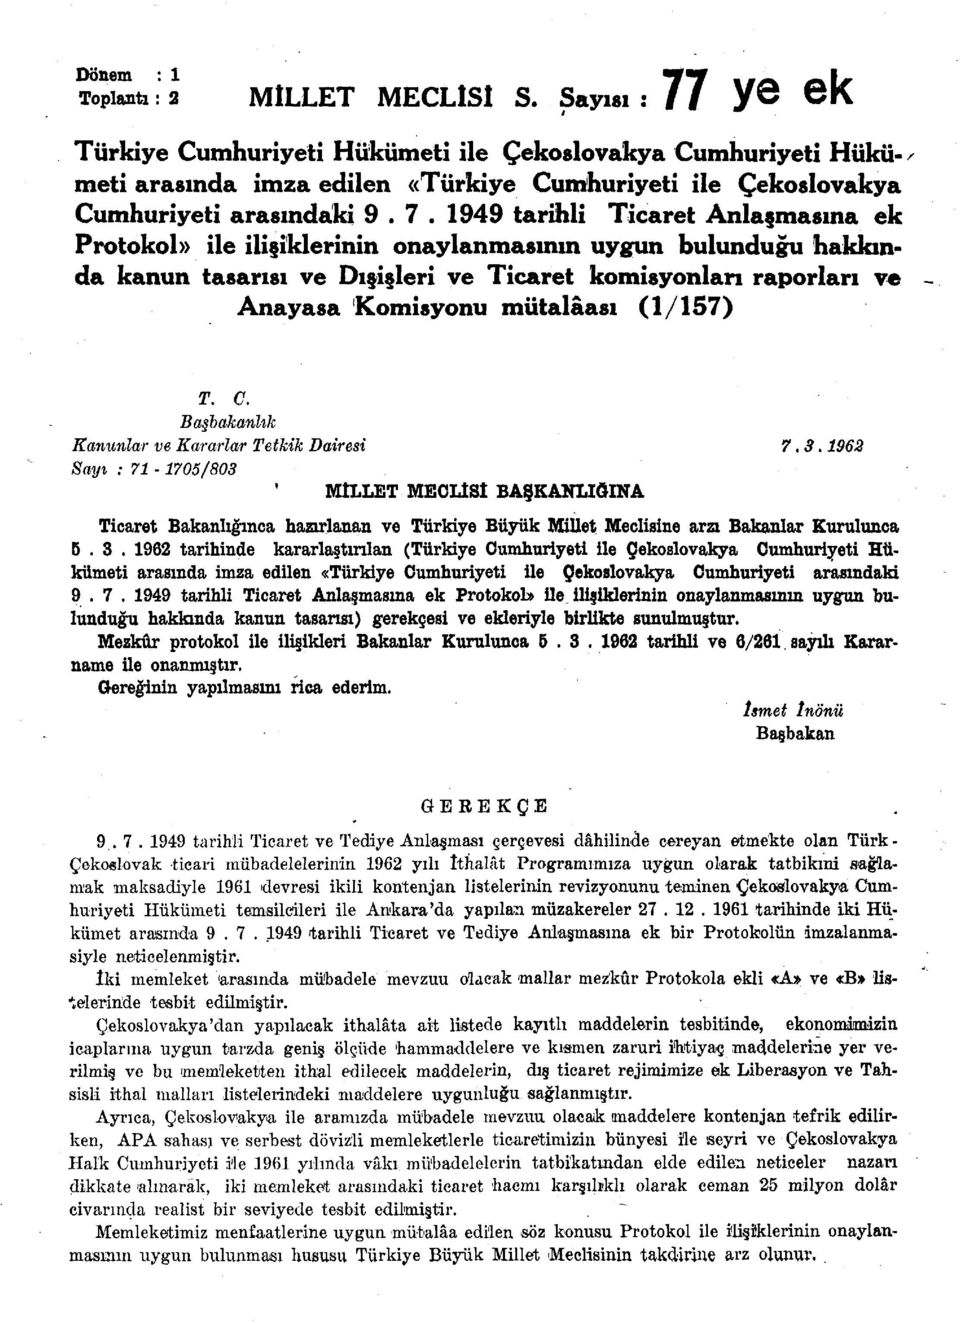 1949 tarihli Ticaret Anlaşmasına ek Protokol ile ilişiklerinin onaylanmasının uygun bulunduğu hakkında kanun tasarısı ve Dışişleri ve Ticaret komisyonları raporları ve - Anayasa Komisyonu mütalâası